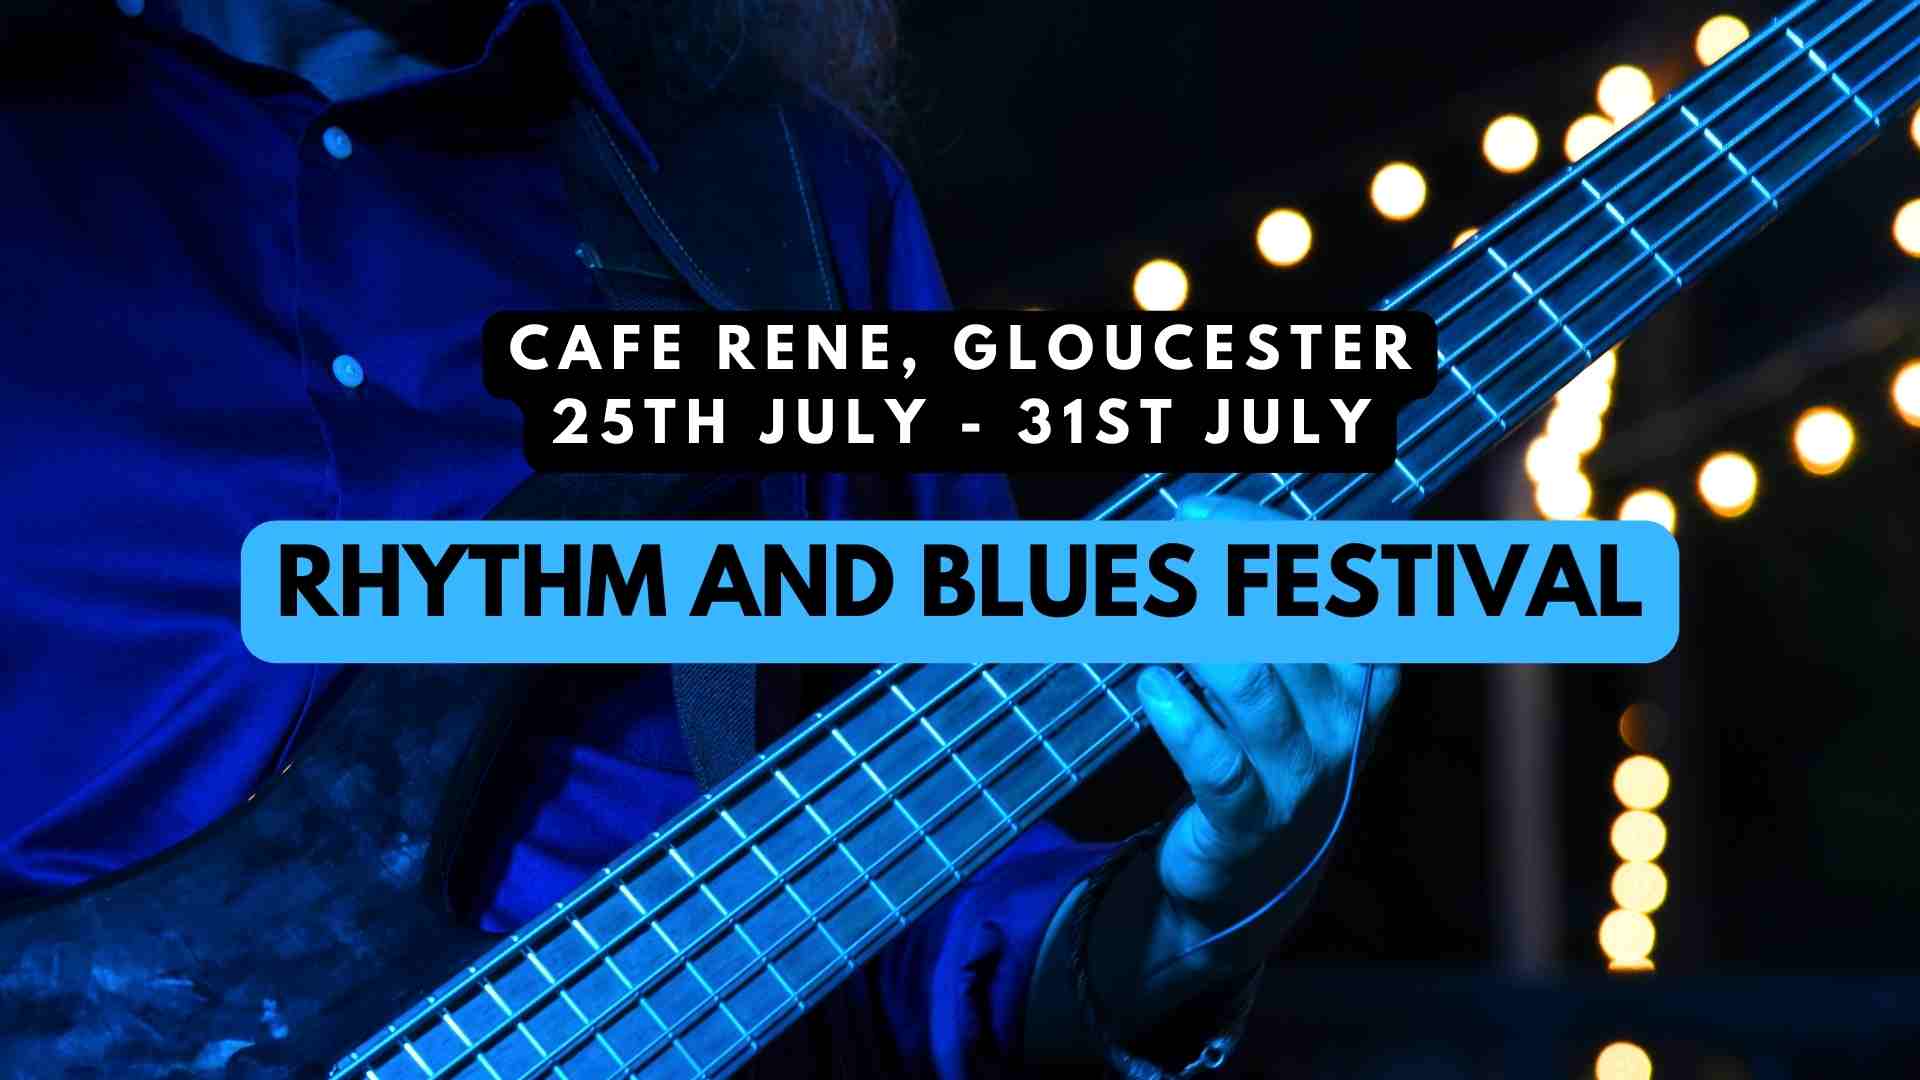 CAFE RENE RHYTHM AND BLUES FESTIVAL GLOUCESTER